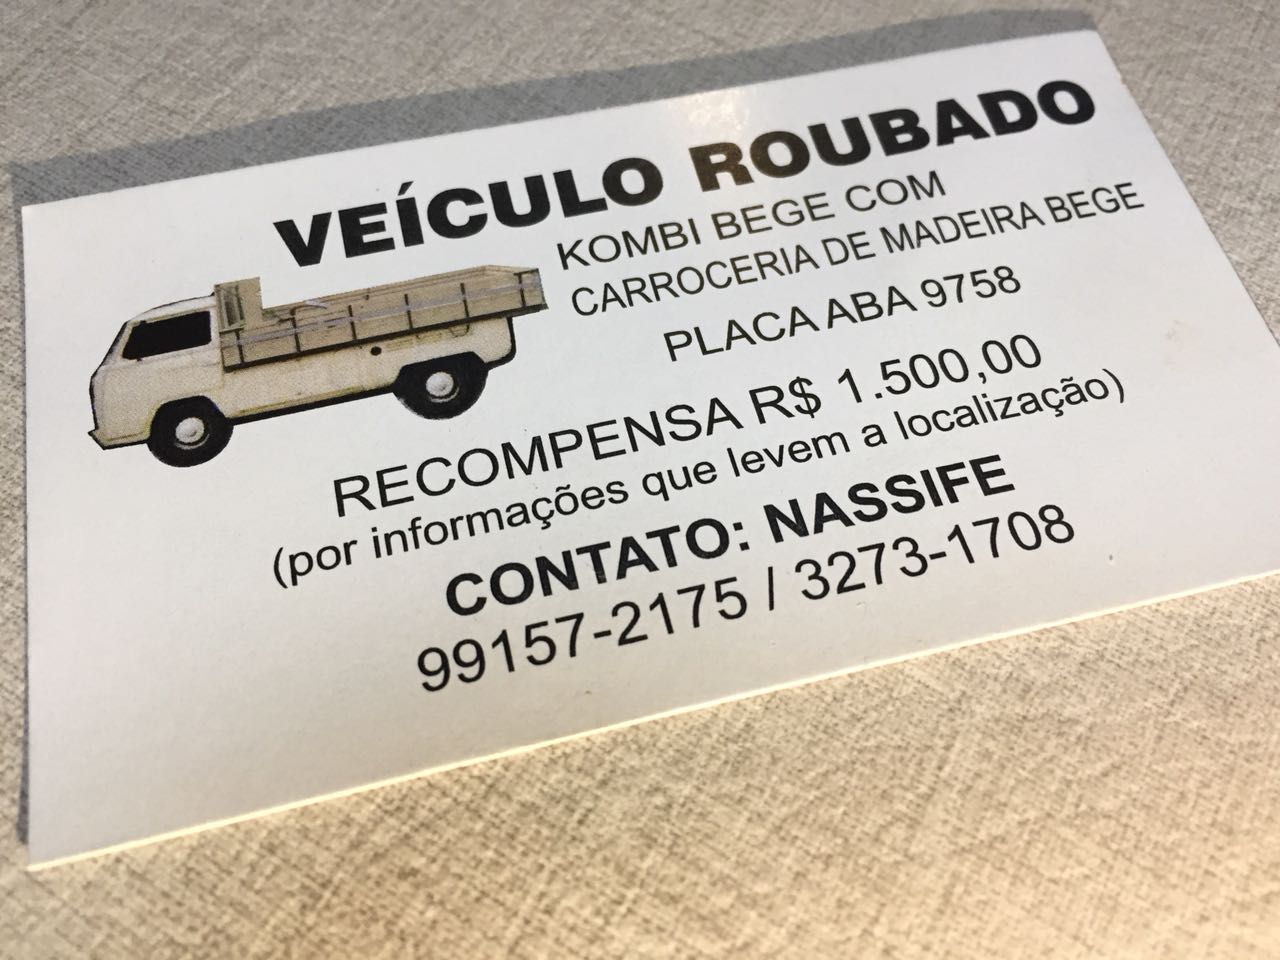  Cartões de visita oferecem recompensa por Kombi furtada em Curitiba